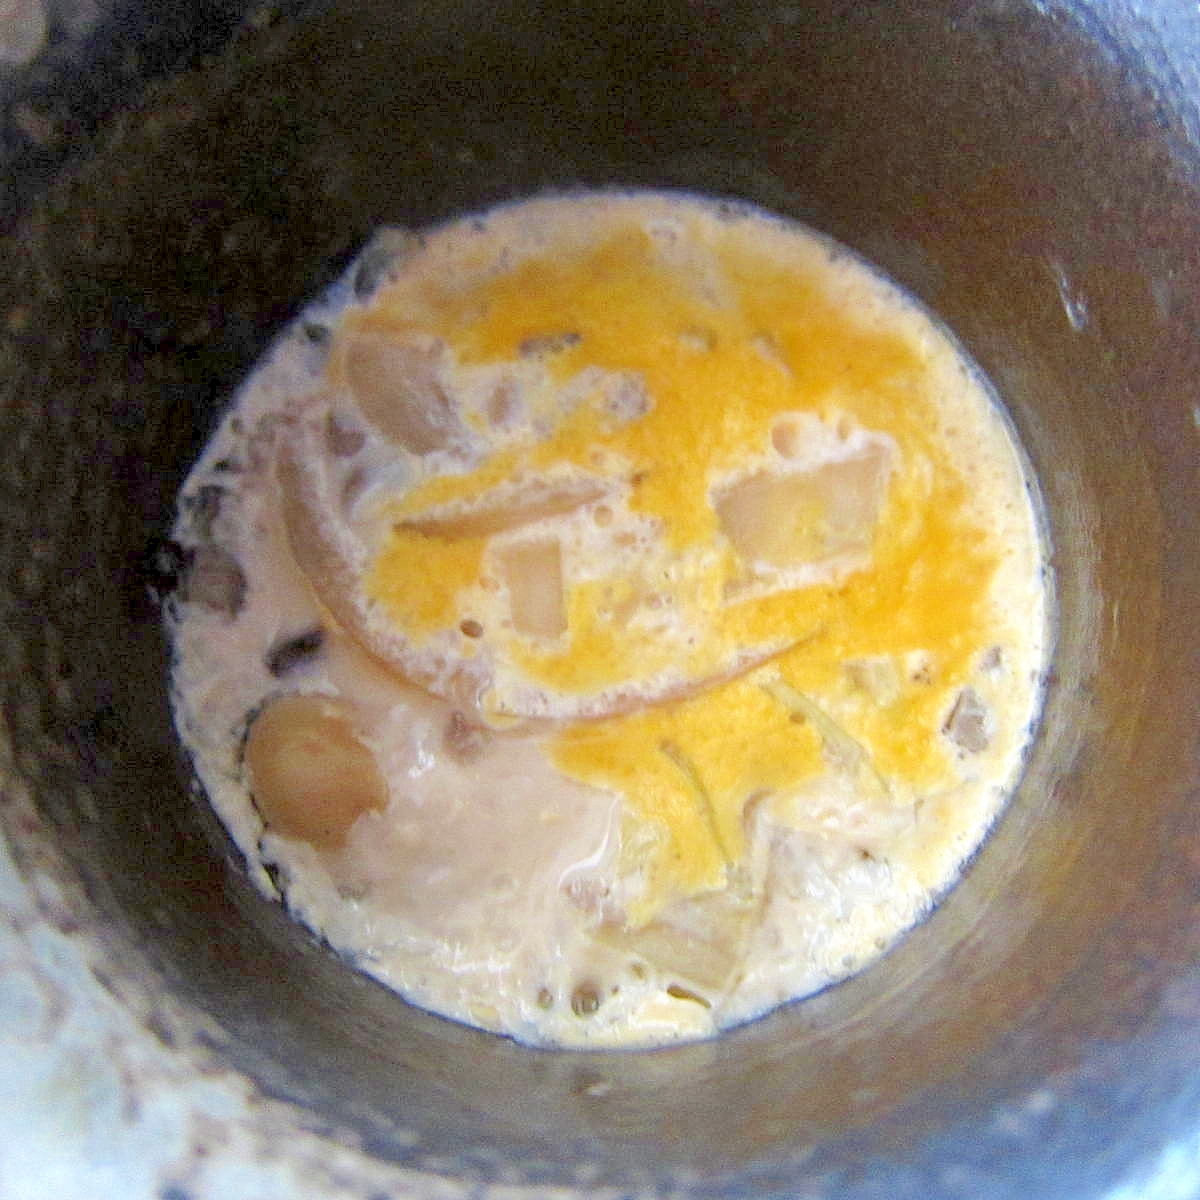 そばつゆ卵牡蠣茶碗蒸し